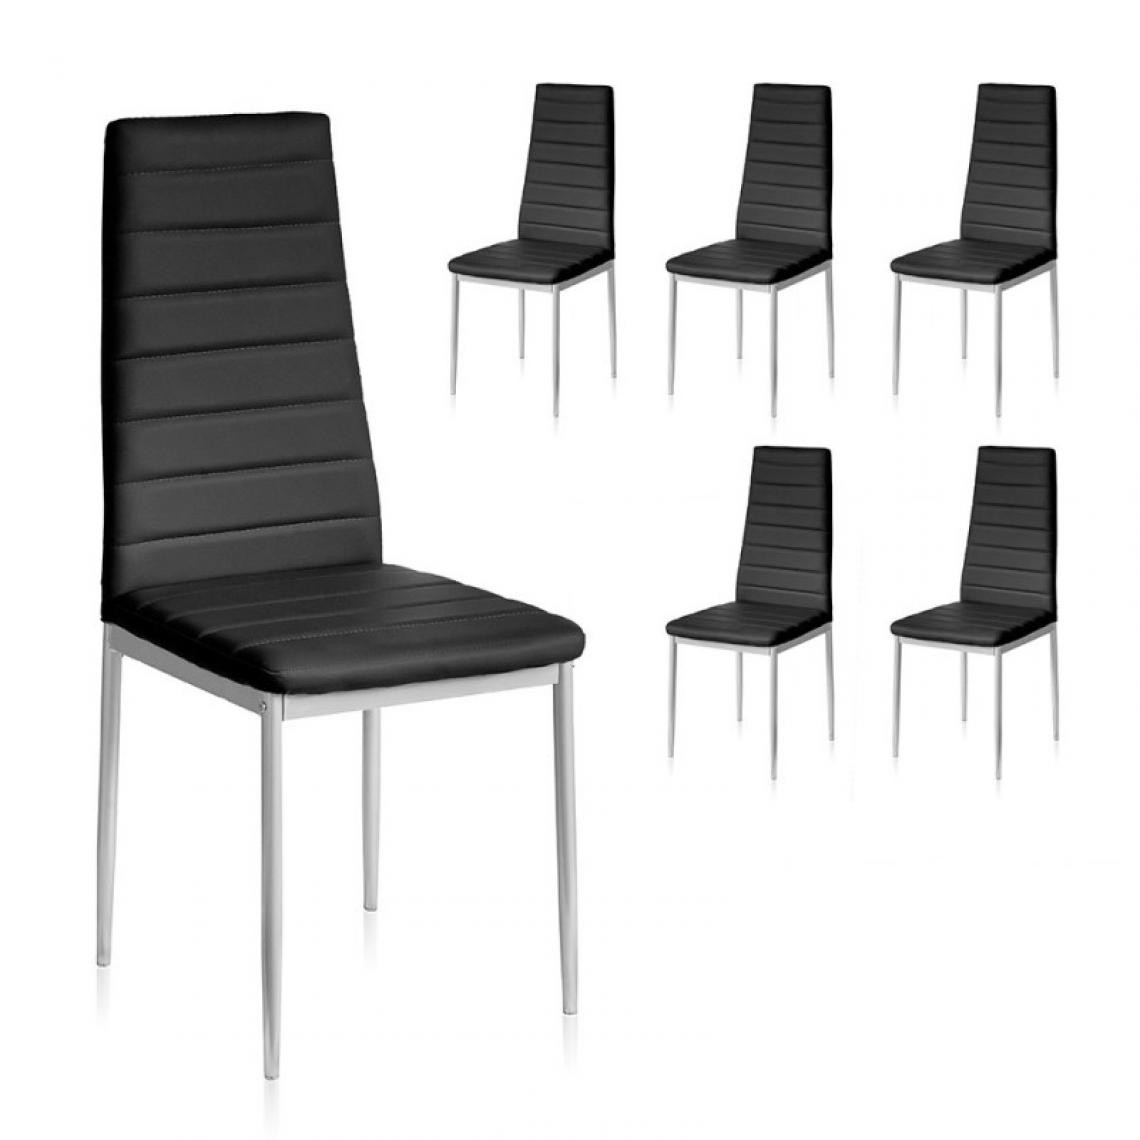 Webmarketpoint - Chaise de salle à manger moderne en éco-cuir noir 41x41x h96 cm 6 pièces - Chaises